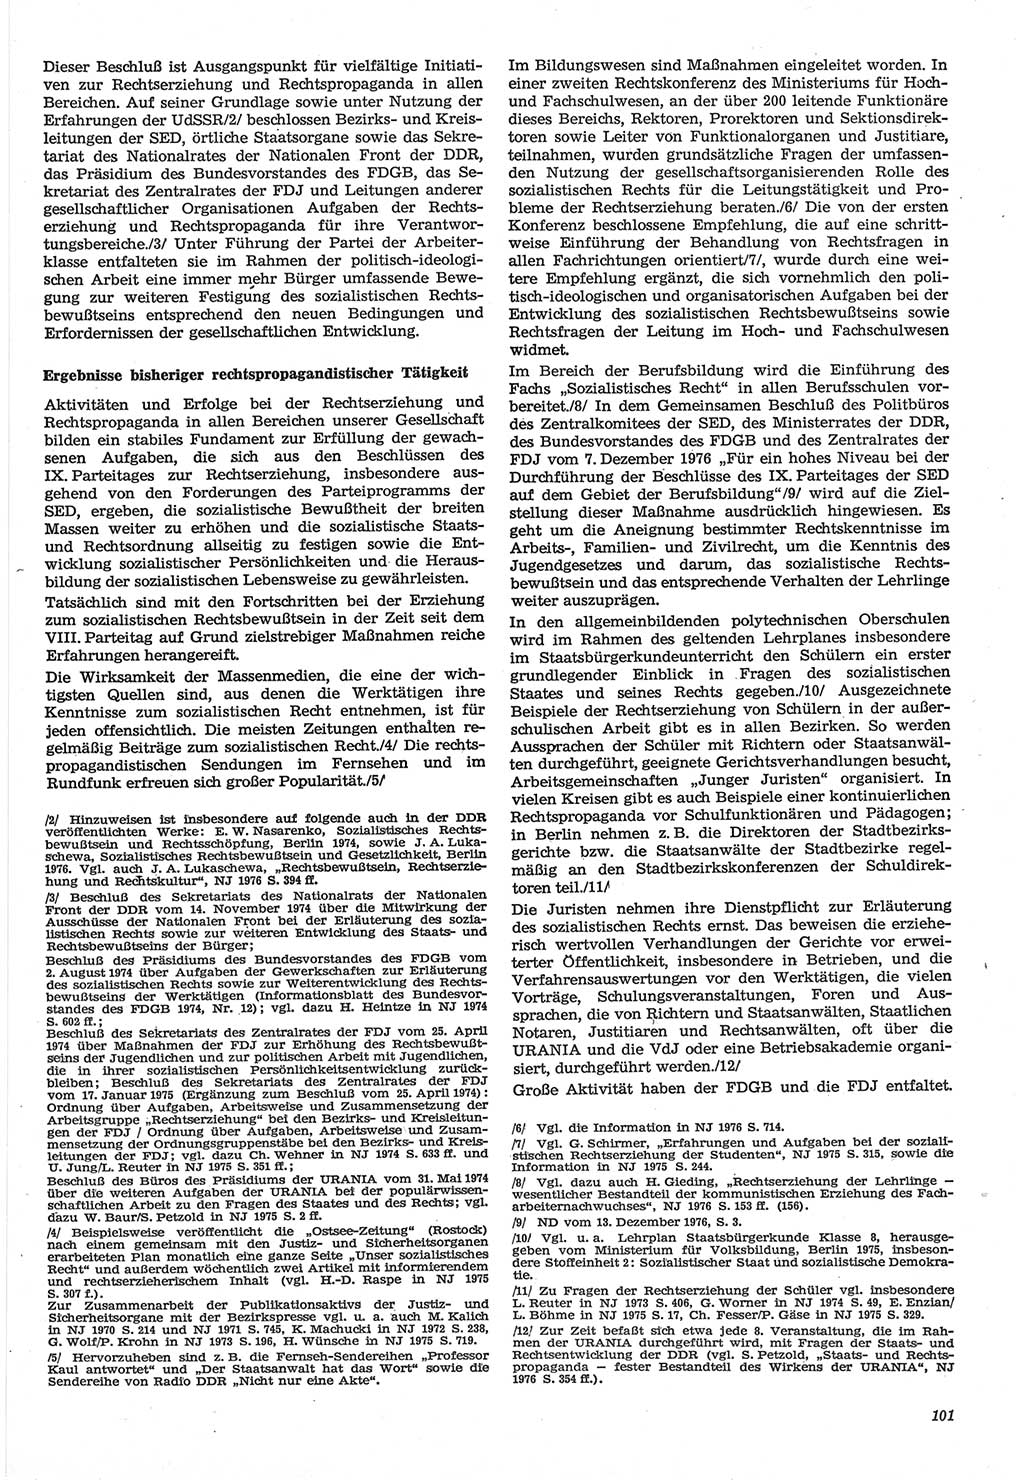 Neue Justiz (NJ), Zeitschrift für Recht und Rechtswissenschaft-Zeitschrift, sozialistisches Recht und Gesetzlichkeit, 31. Jahrgang 1977, Seite 101 (NJ DDR 1977, S. 101)